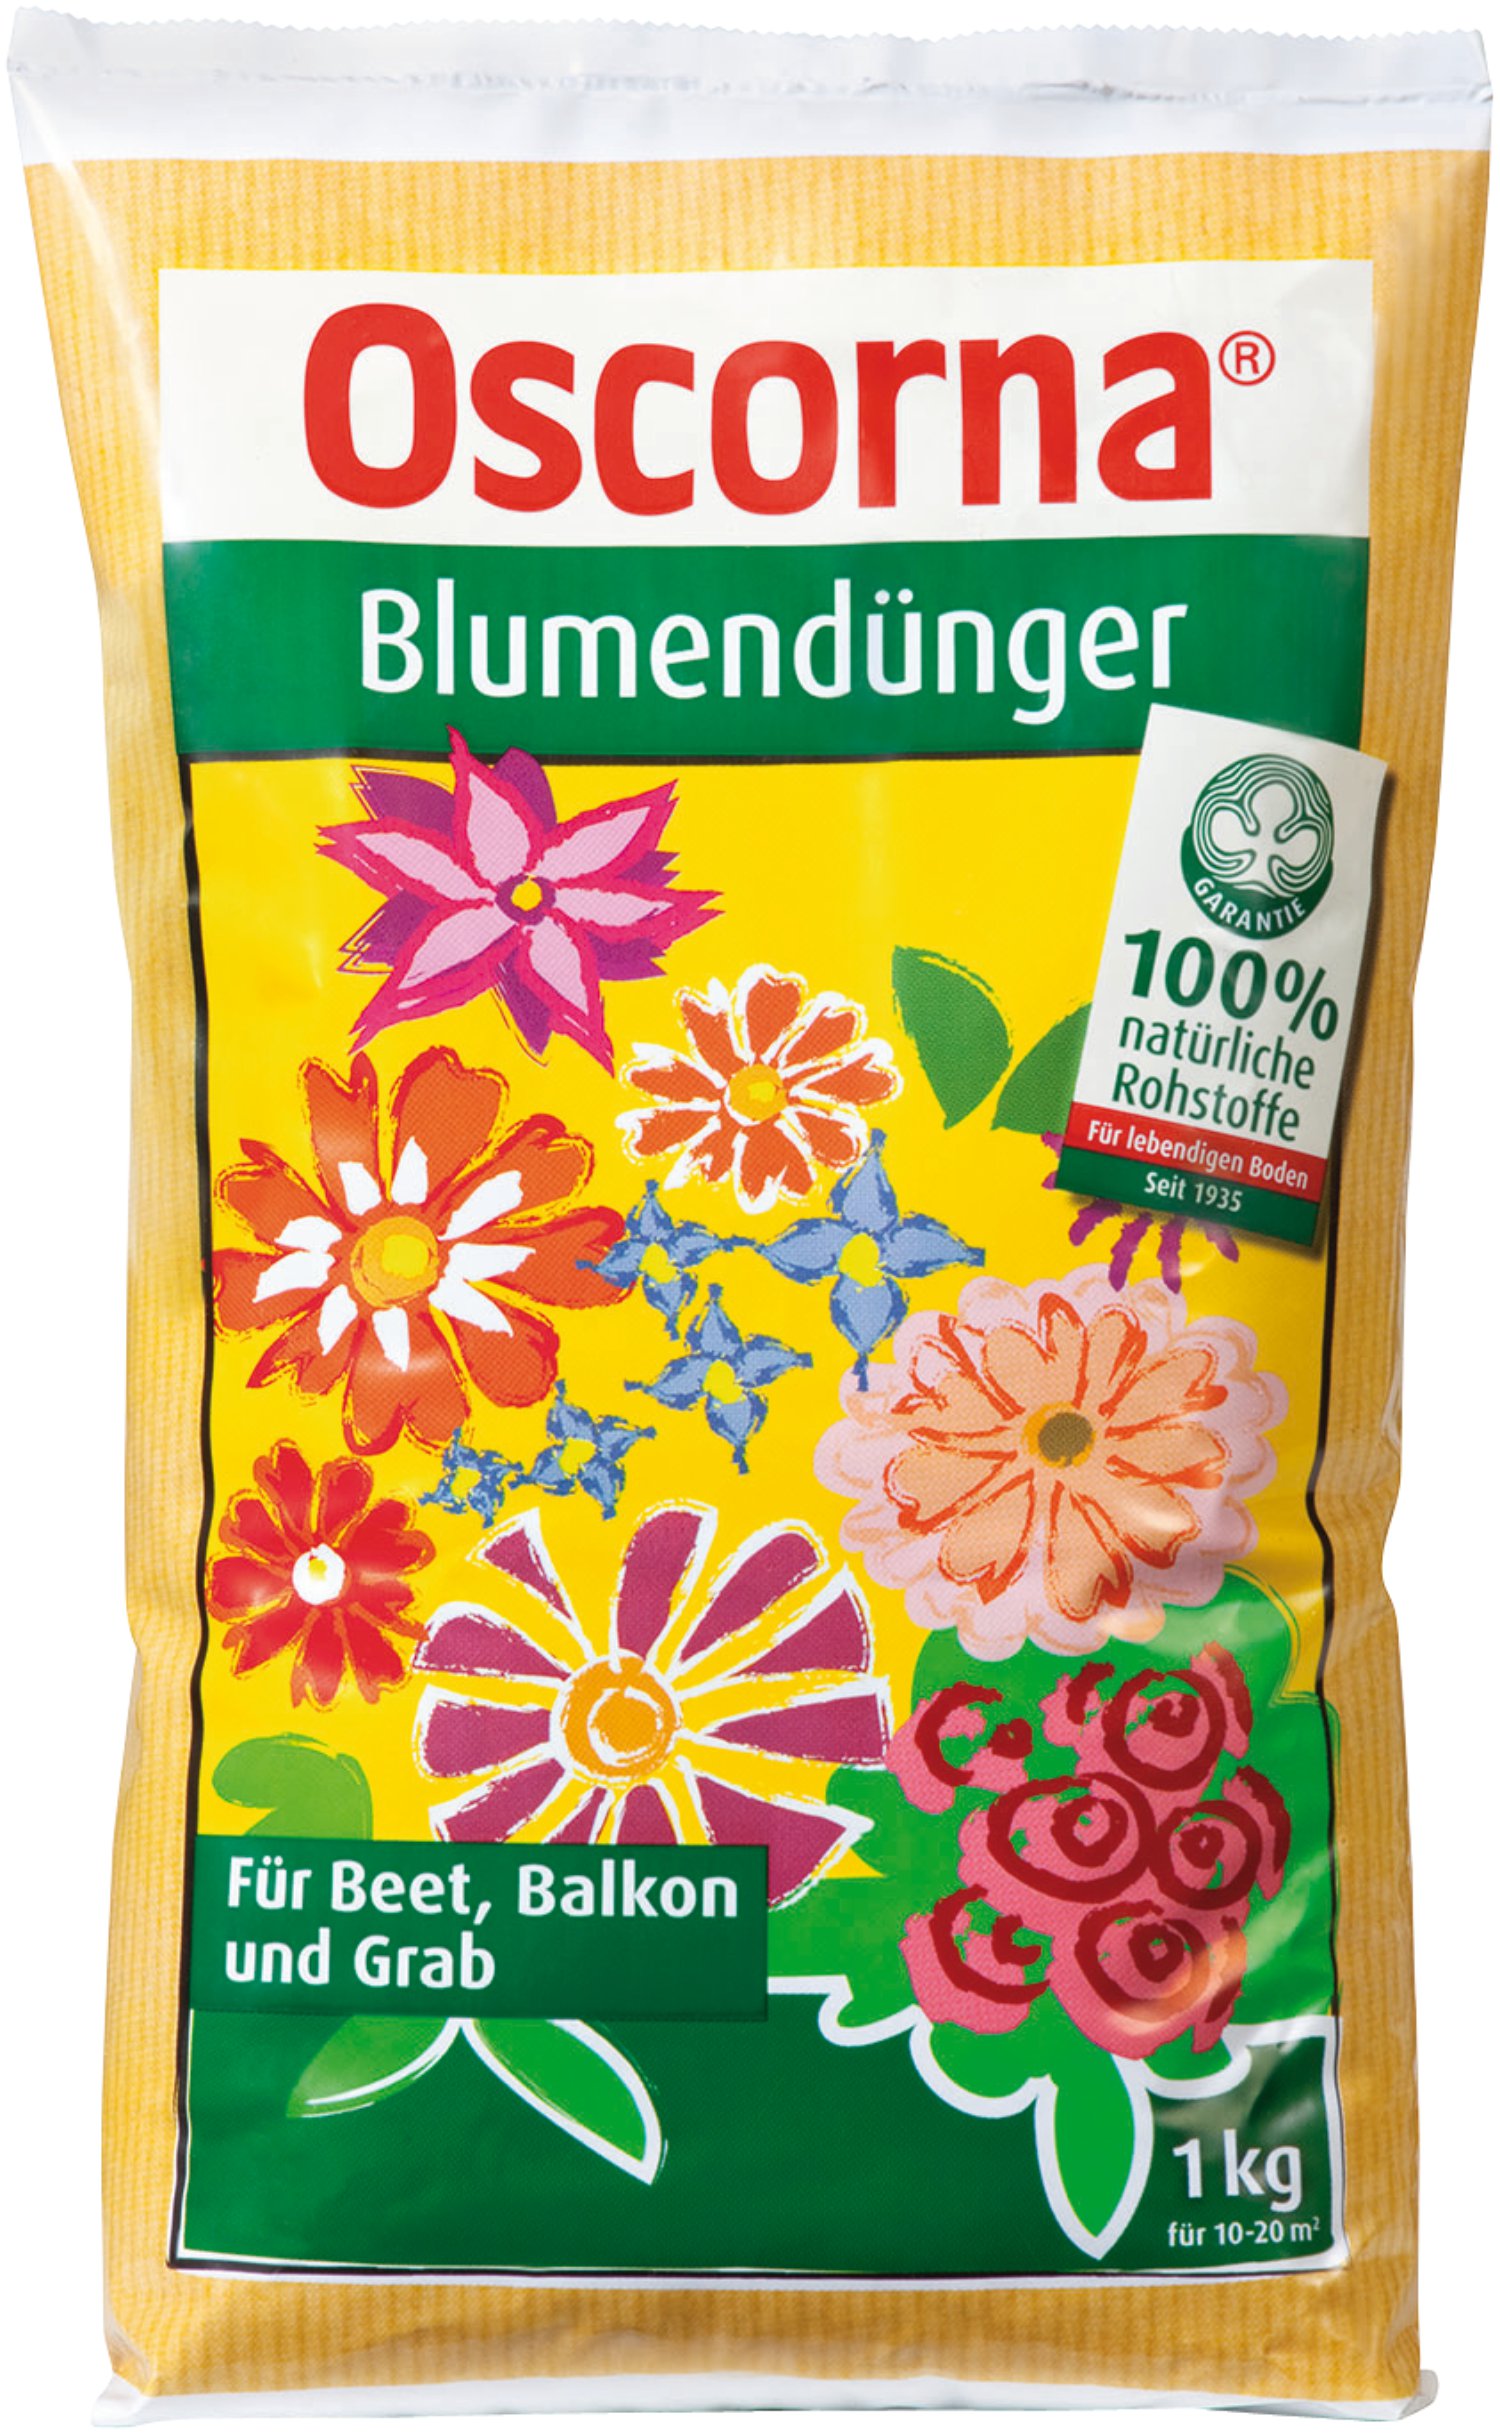 OSCORNA Blumendünger 1 kg